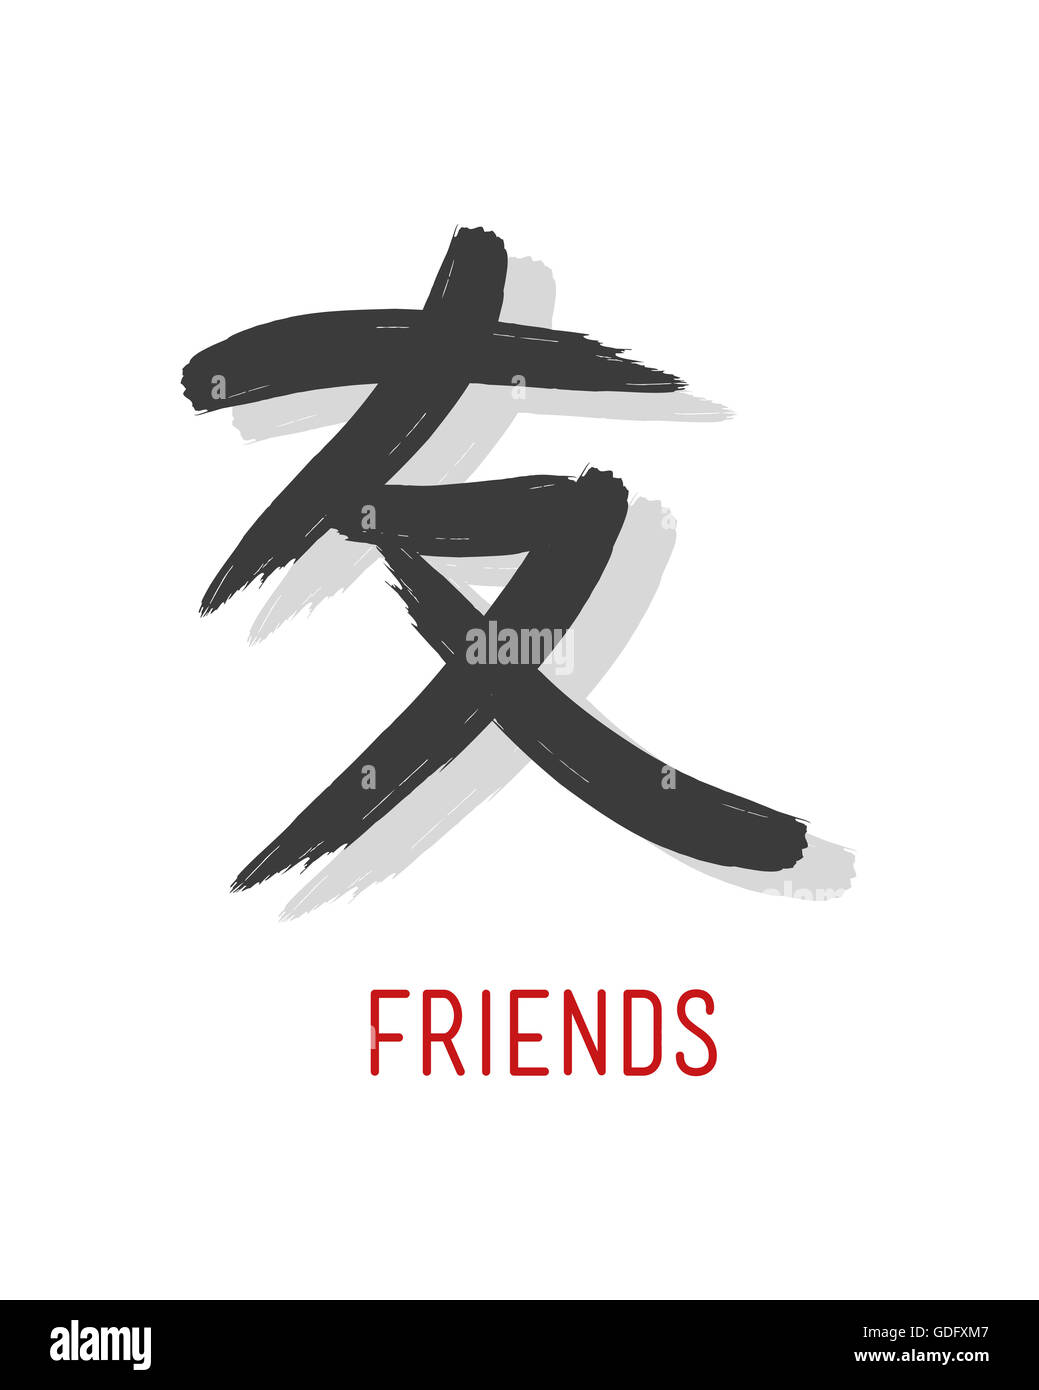 Handgezeichnete Illustrationen oder Zeichnung des japanischen Symbols für das Wort: Freunde Stockfoto